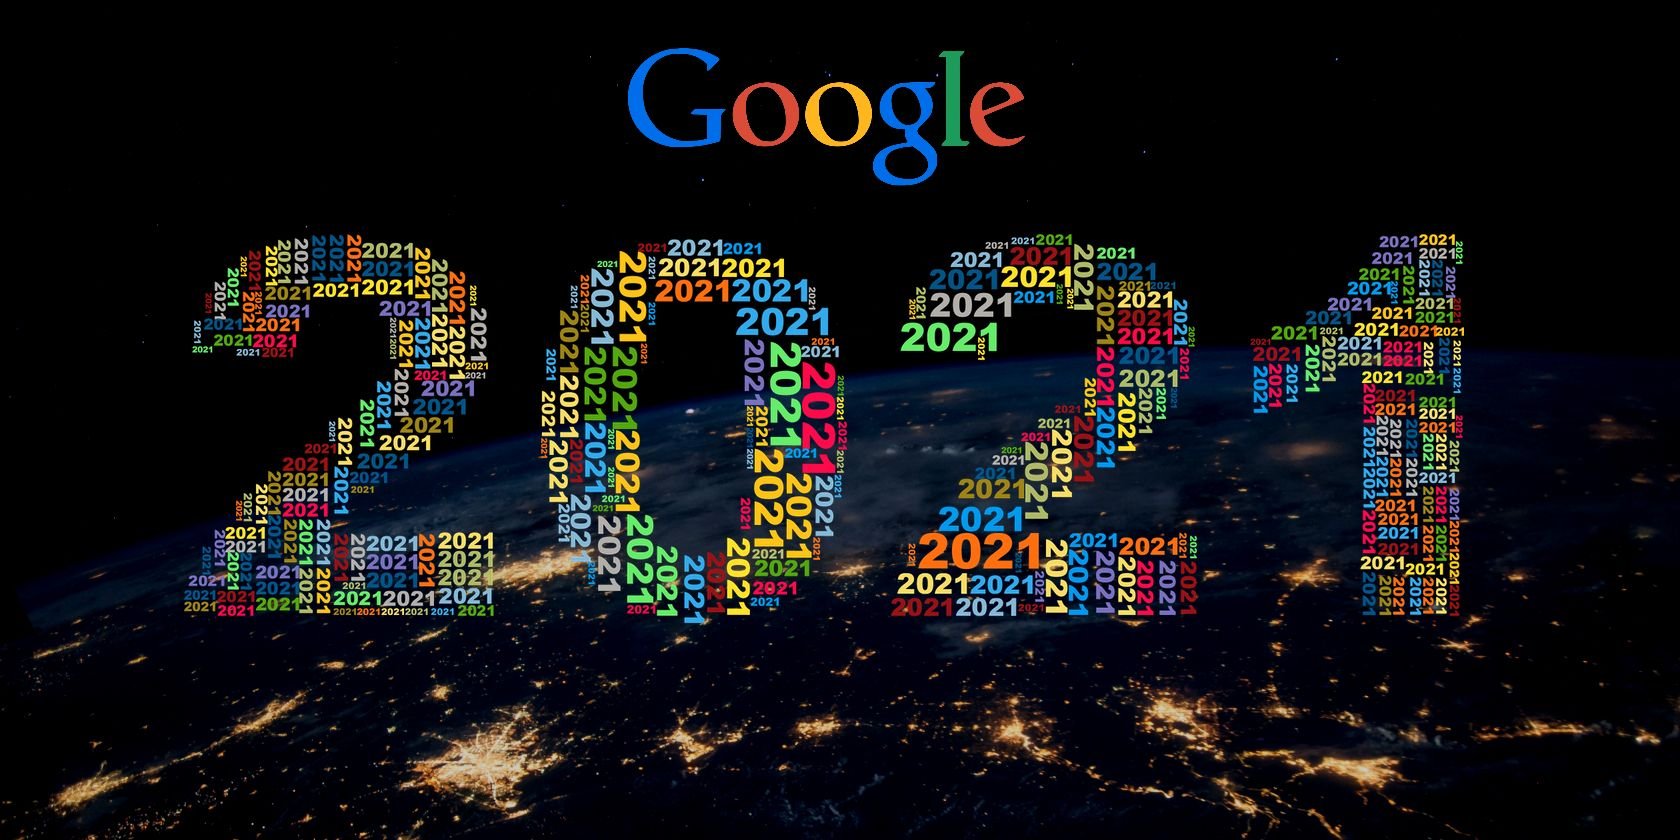 Les recherches Google les plus populaires de l’année 2021